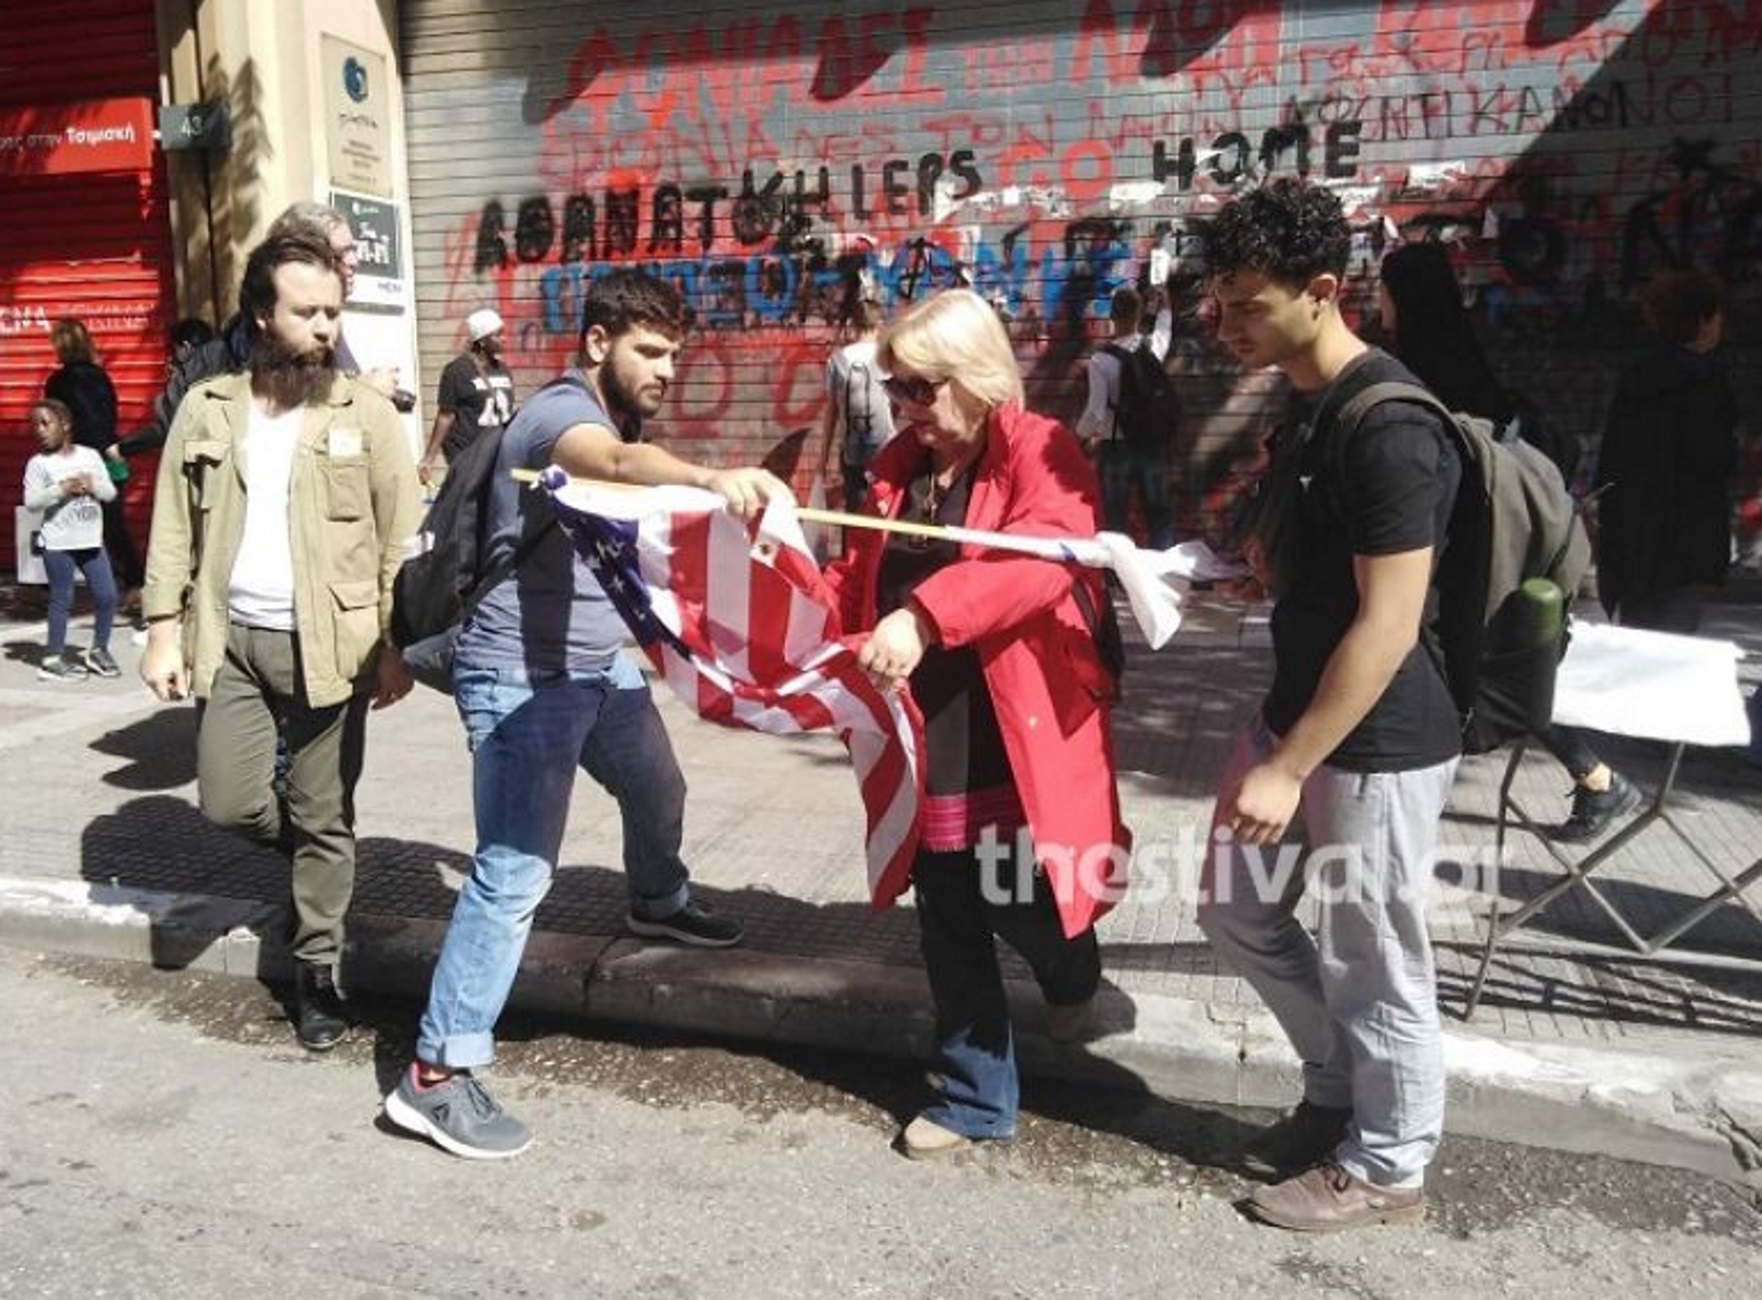 Θεσσαλονίκη: Έκαψαν σημαία των ΗΠΑ και έγραψαν συνθήματα κατά της επίσκεψης Πομπέο στην Ελλάδα – video